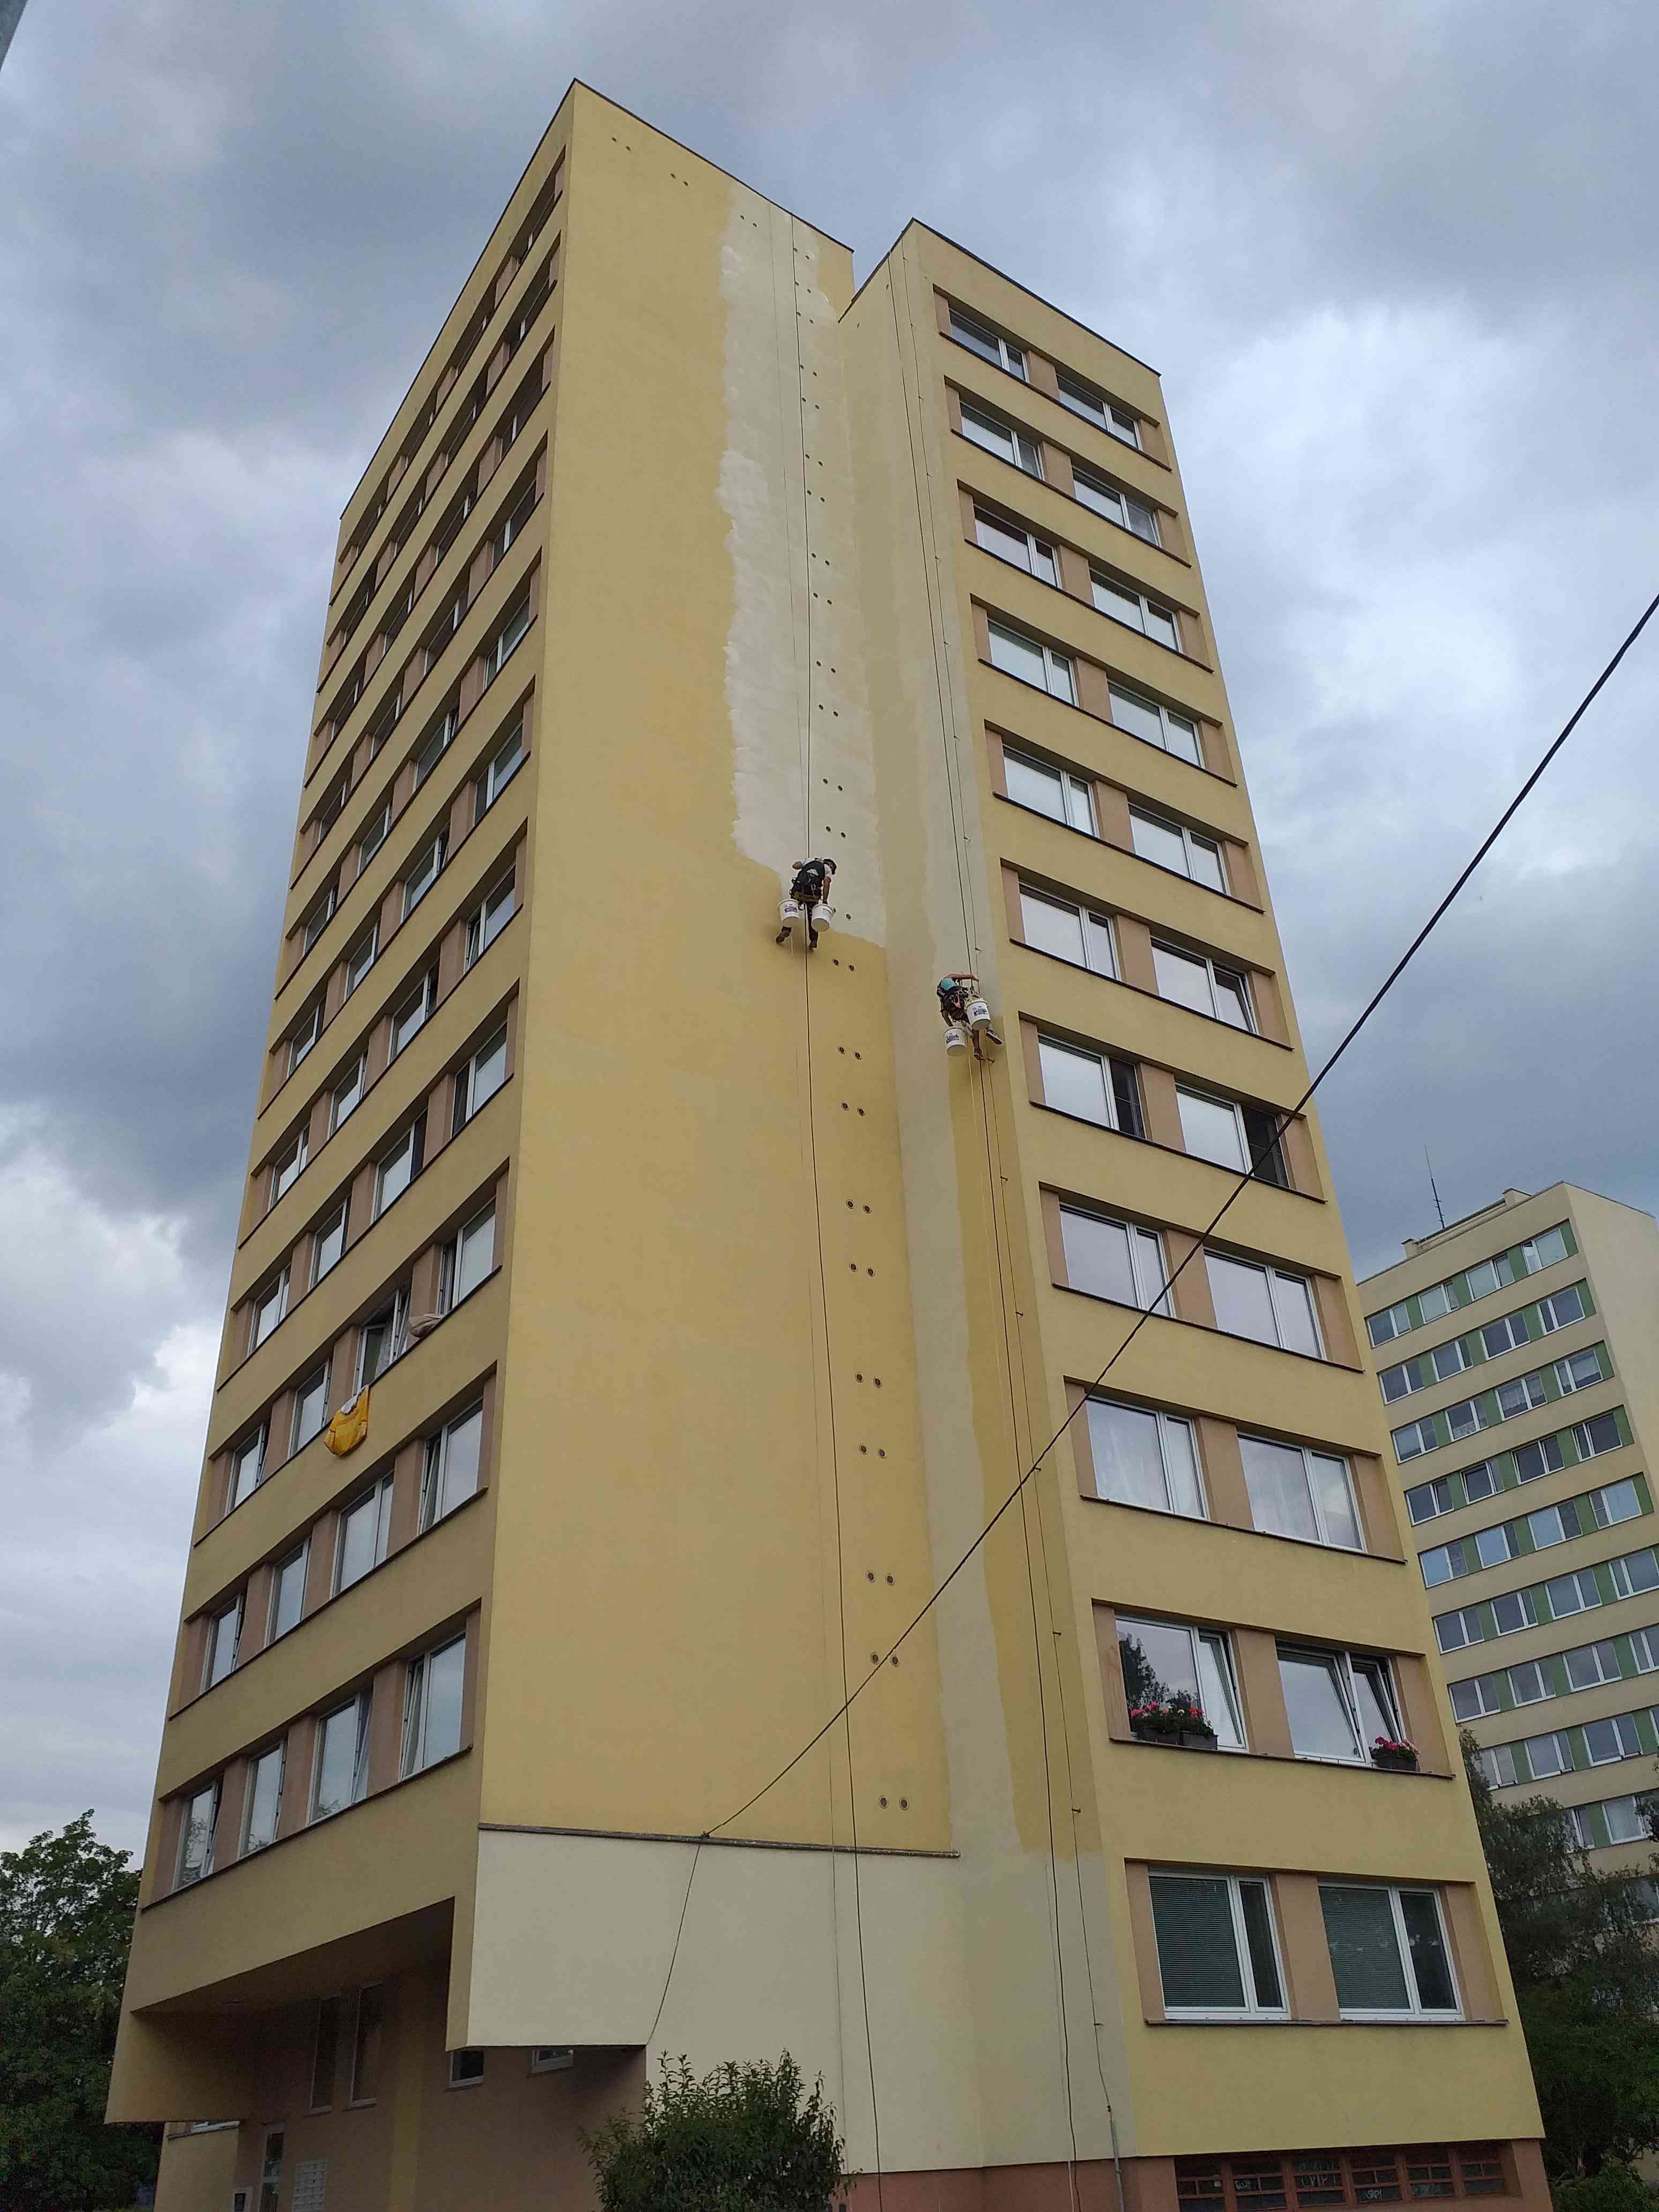 Odstranění nesoudržných částí fasády a následná oprava a nátěr fasády Praha.